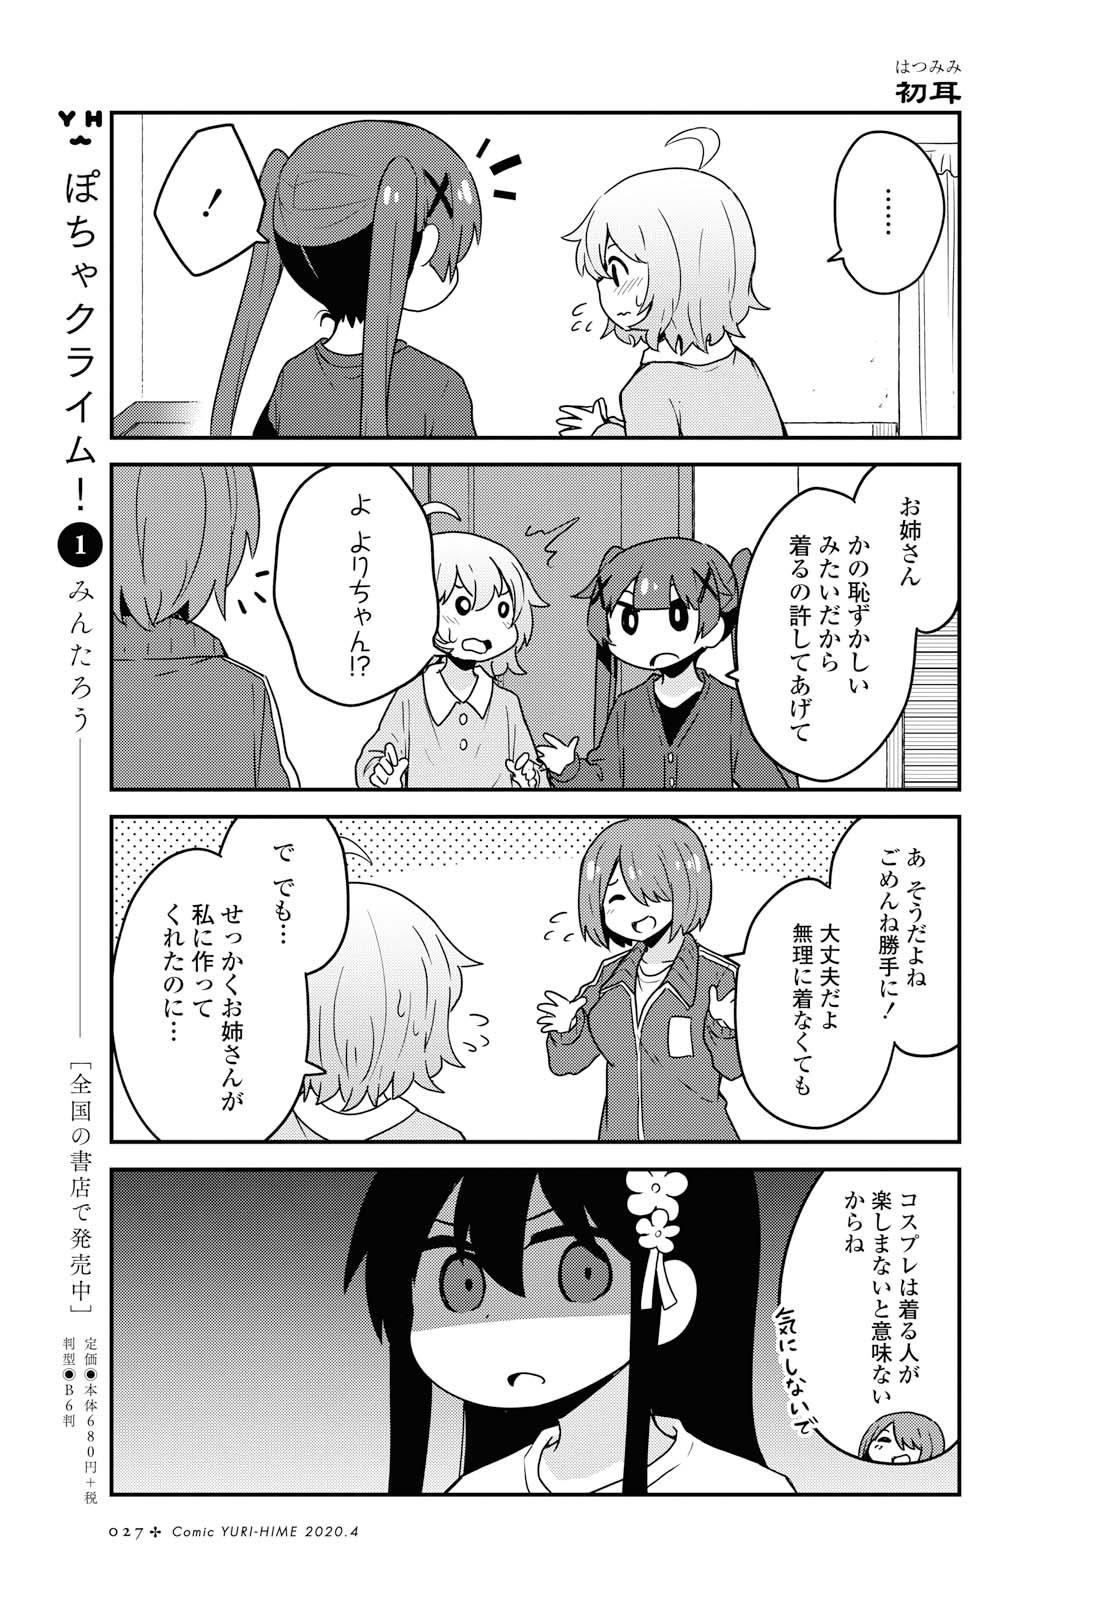 Watashi ni Tenshi ga Maiorita! - Chapter 62 - Page 5